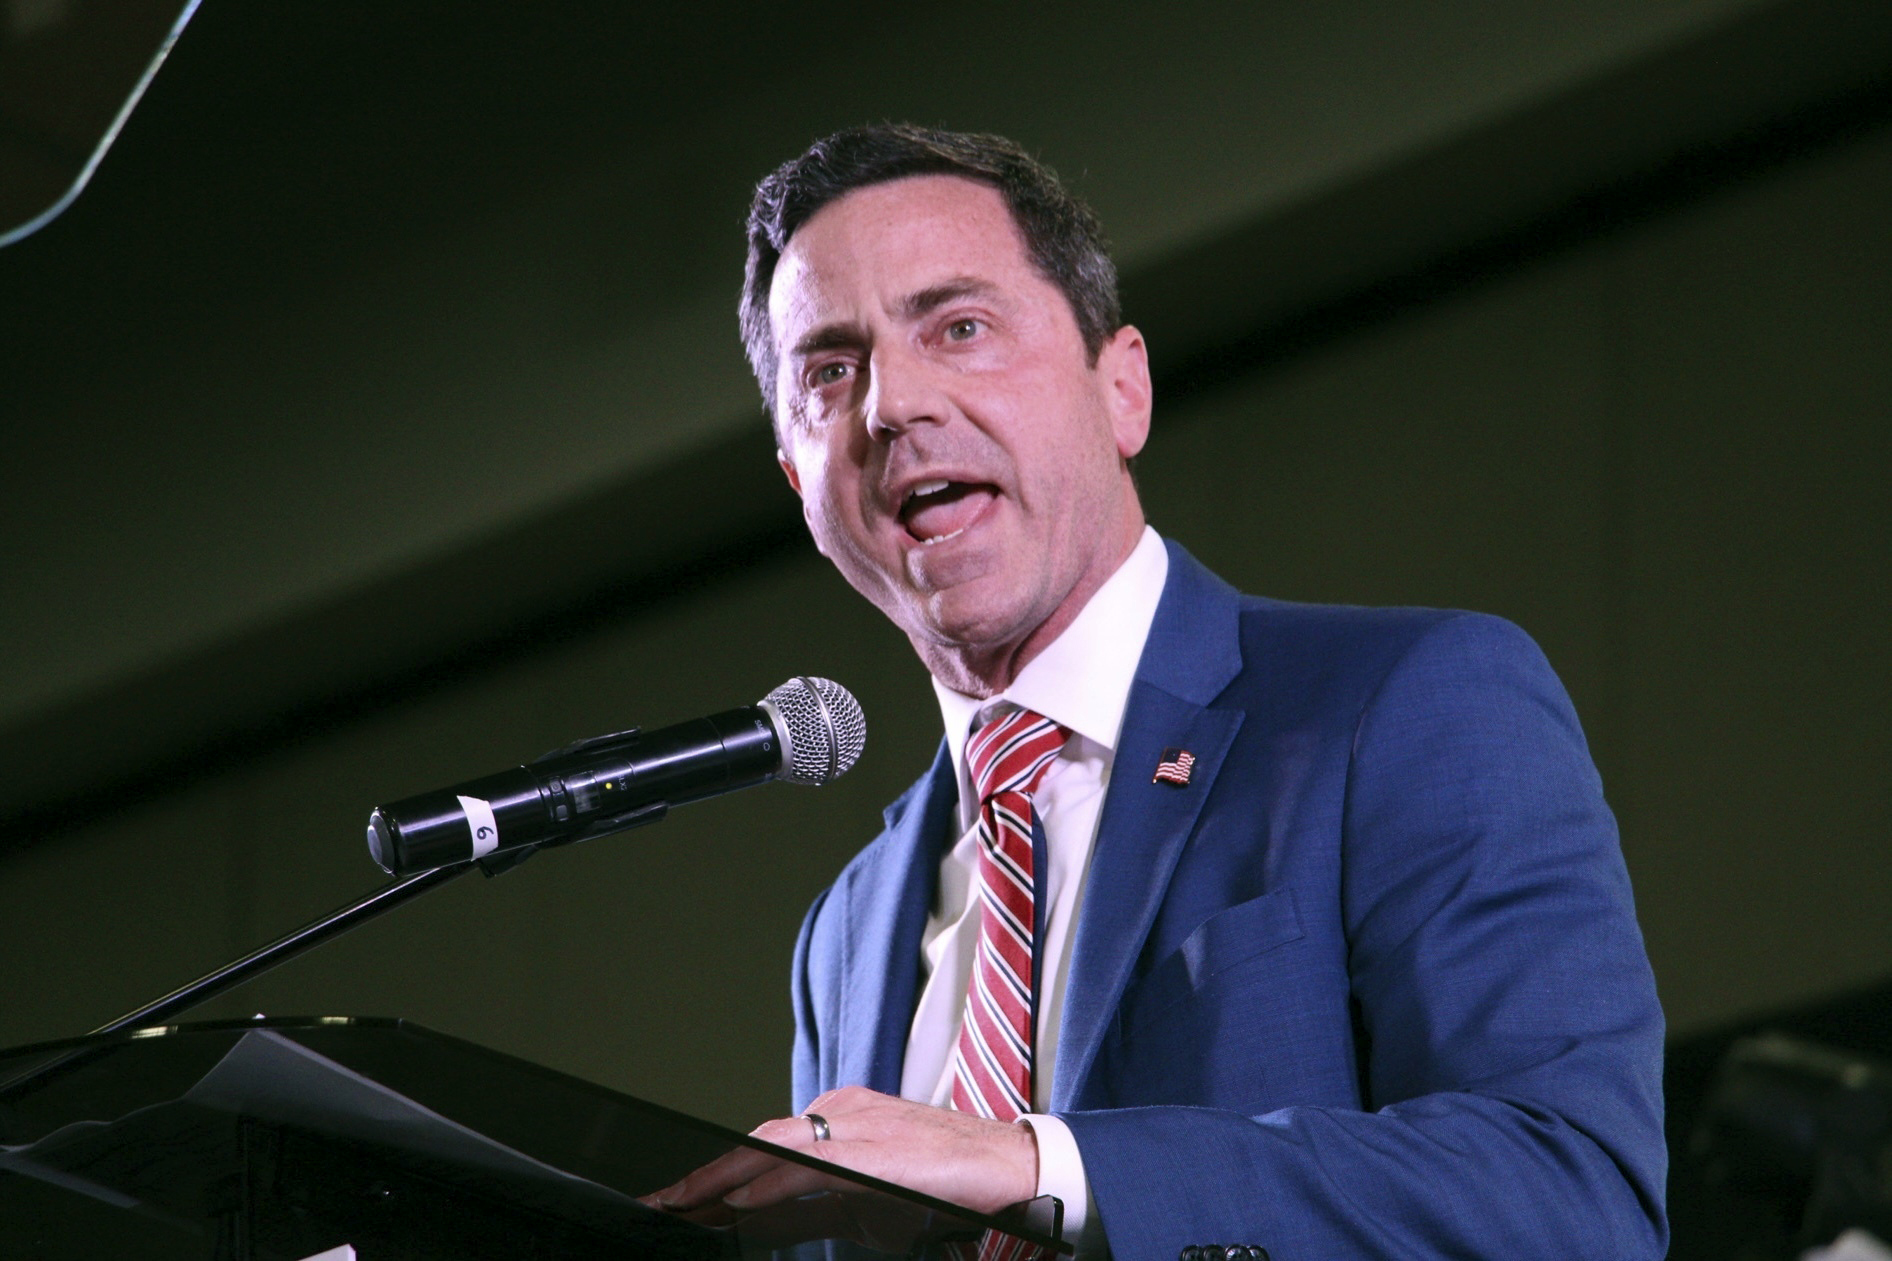 utah gop picks trump-backed mayor as nominee to replace mitt romney